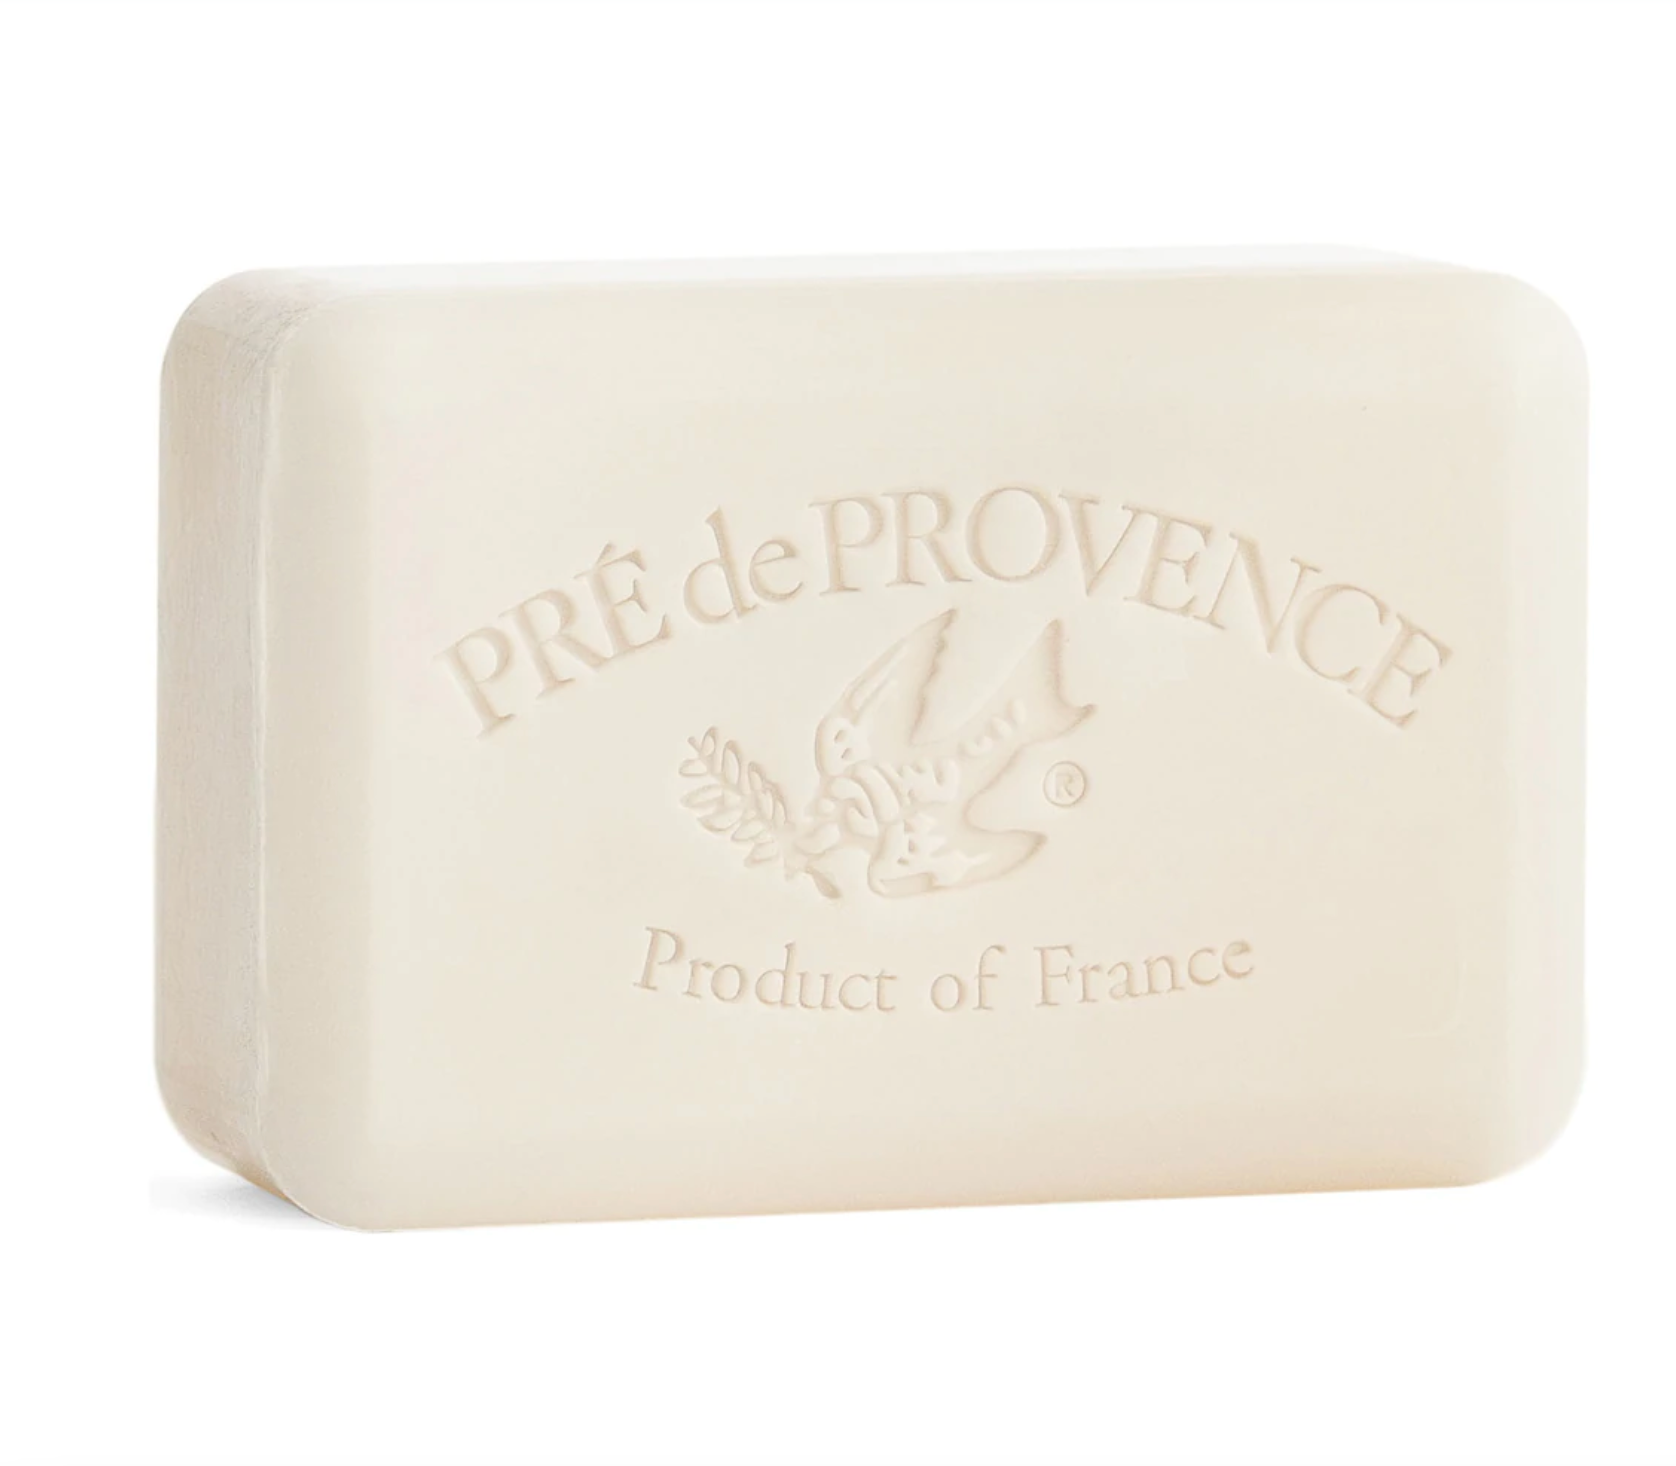 Pre de Provence Bar Soap | Sea Salt